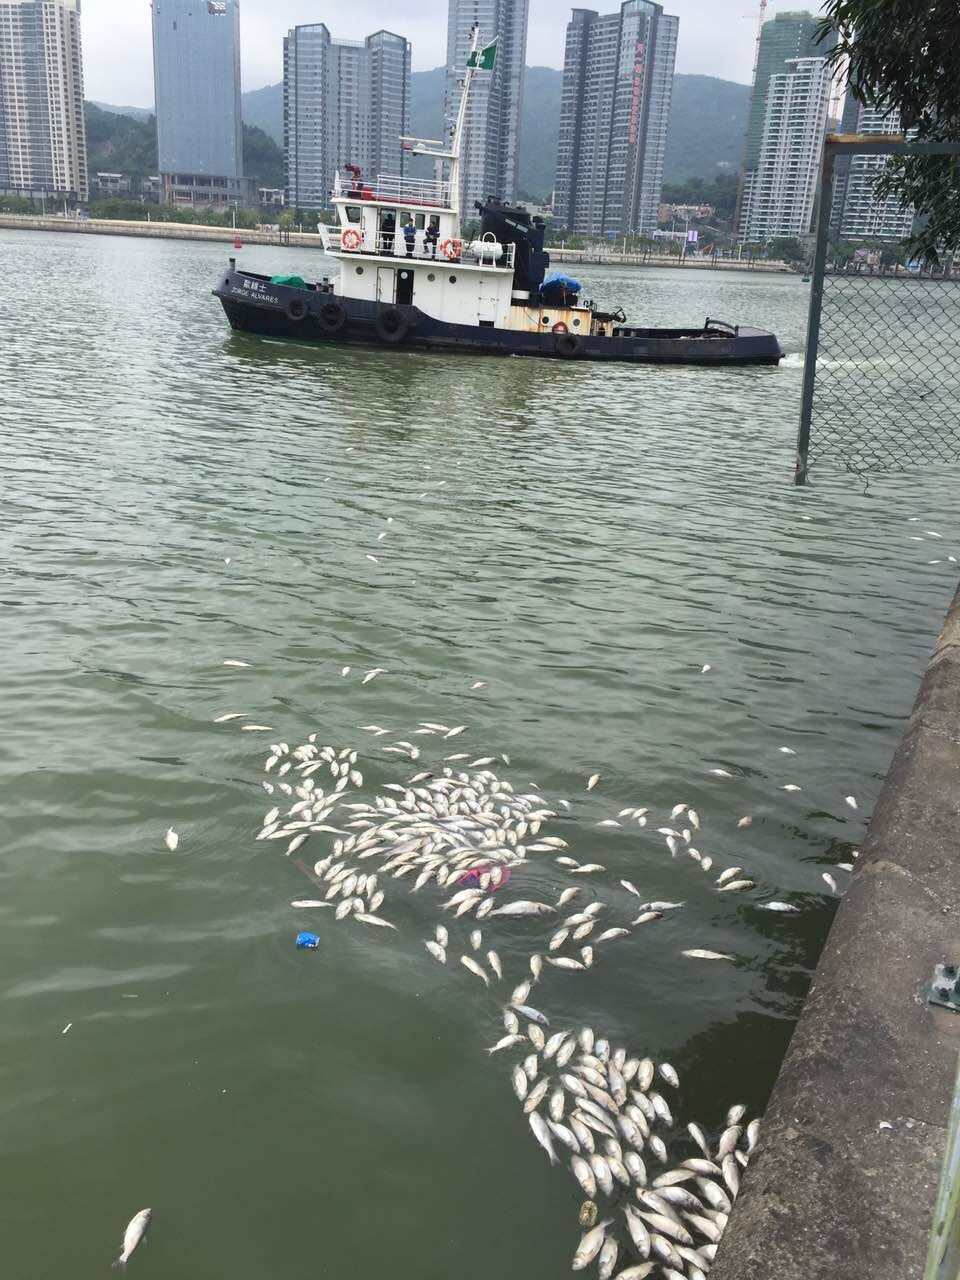 內港及海洋花園淺灘現大量死魚